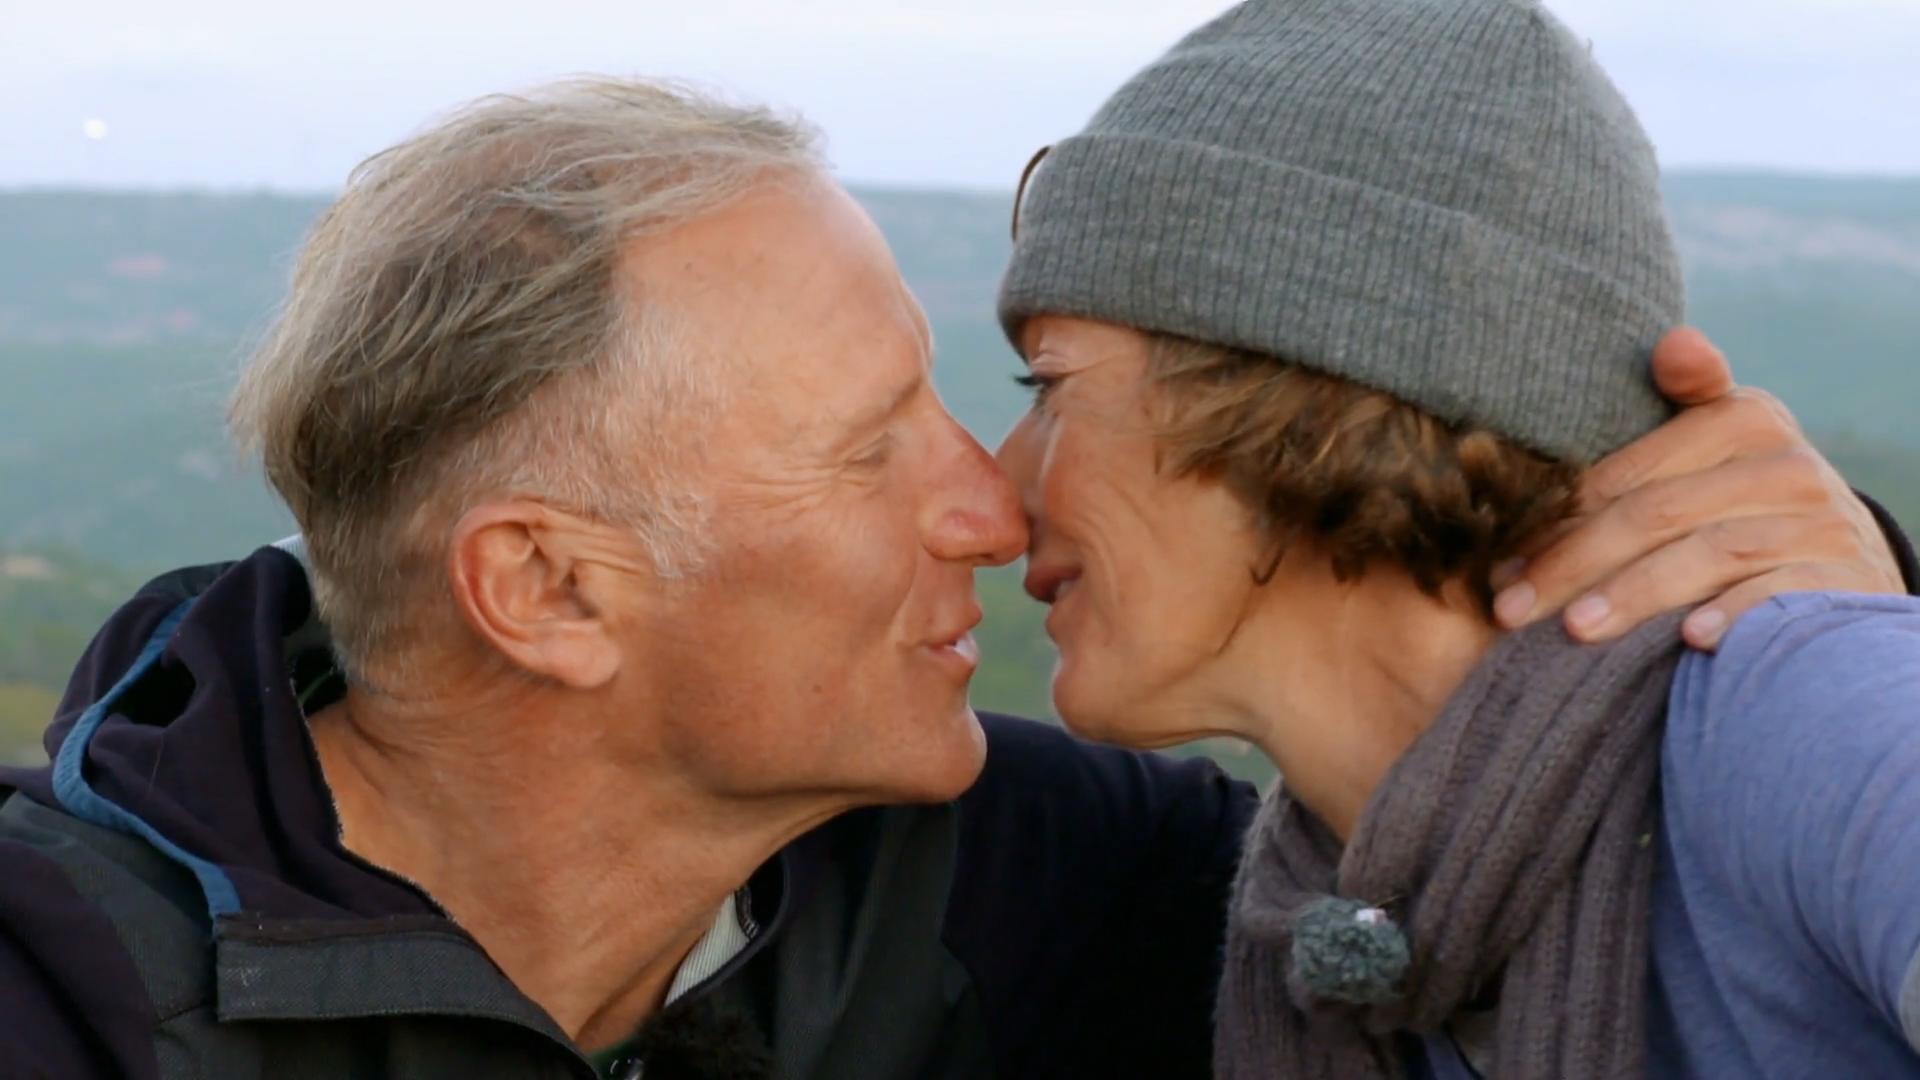 Finalmente la enóloga Rolinga recibe felizmente su primer beso en Francia